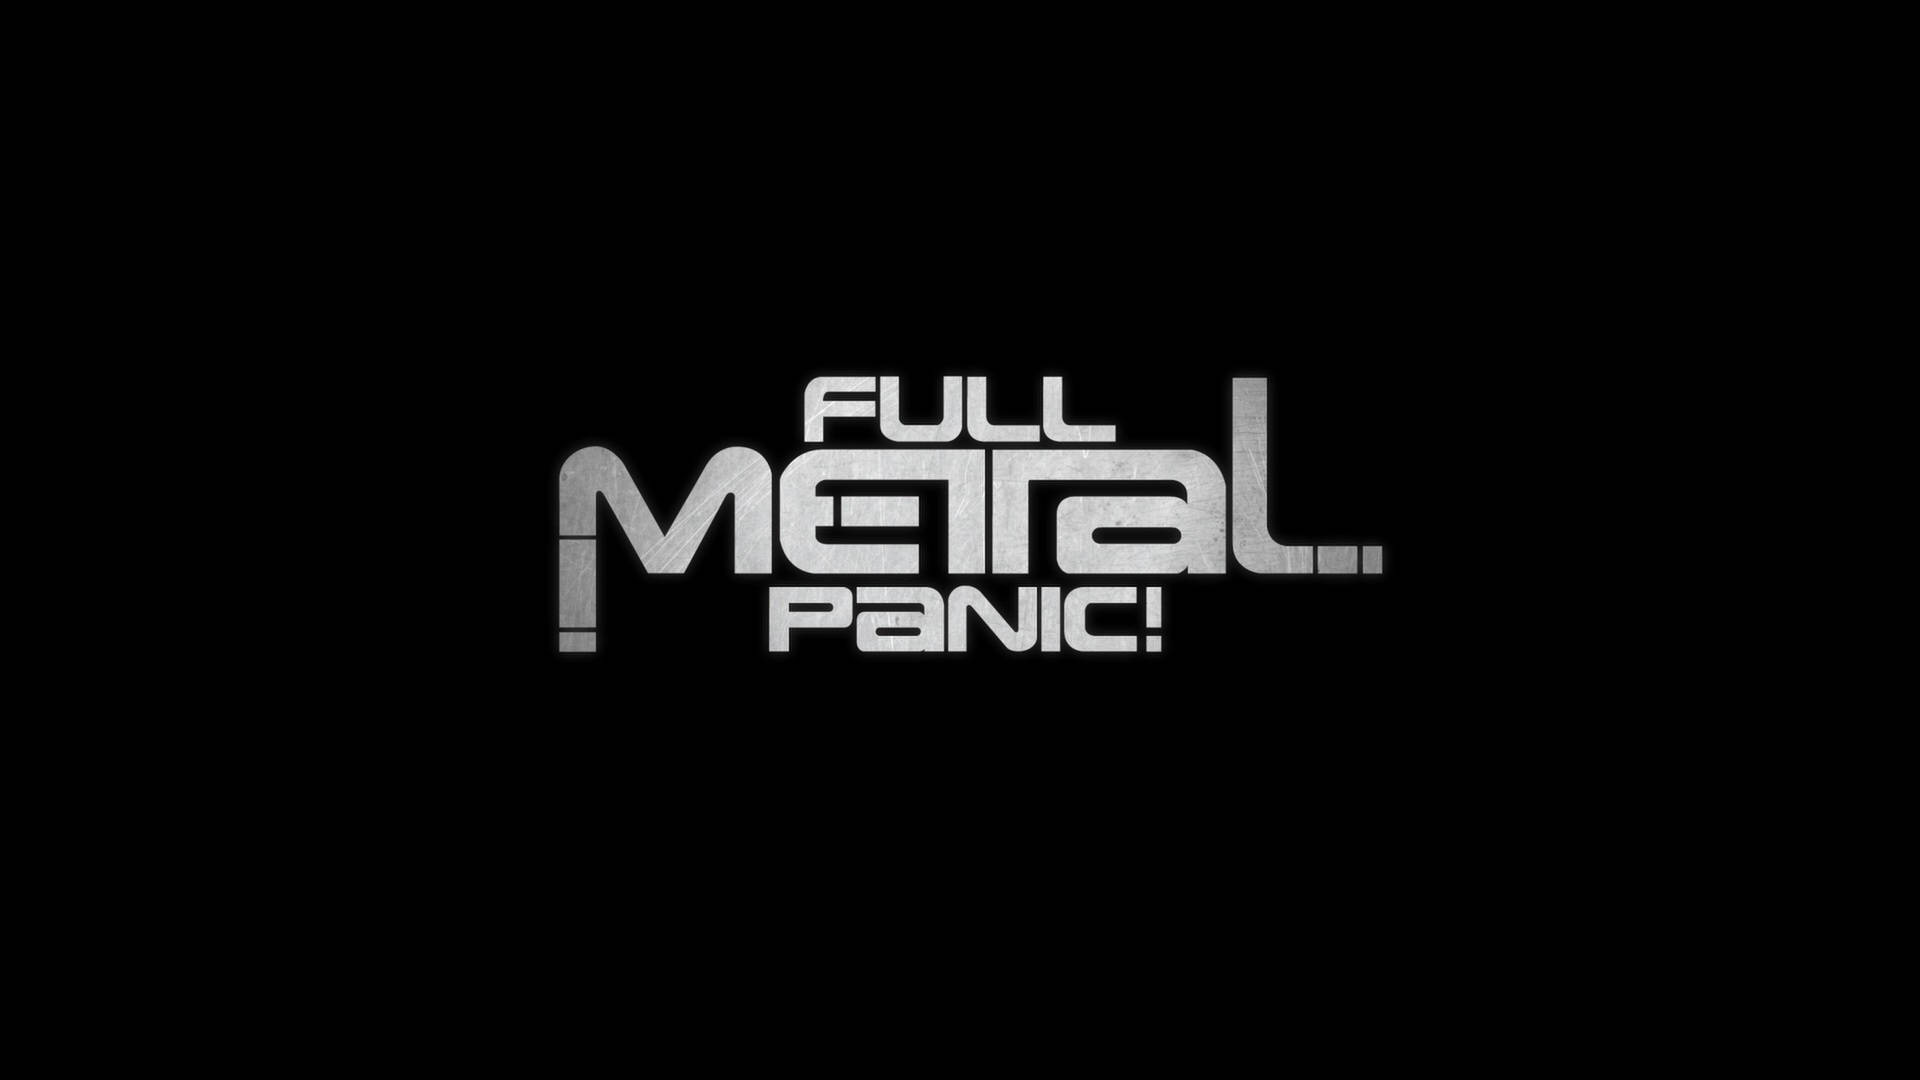 Metallic Full Metal Panic Poster Background